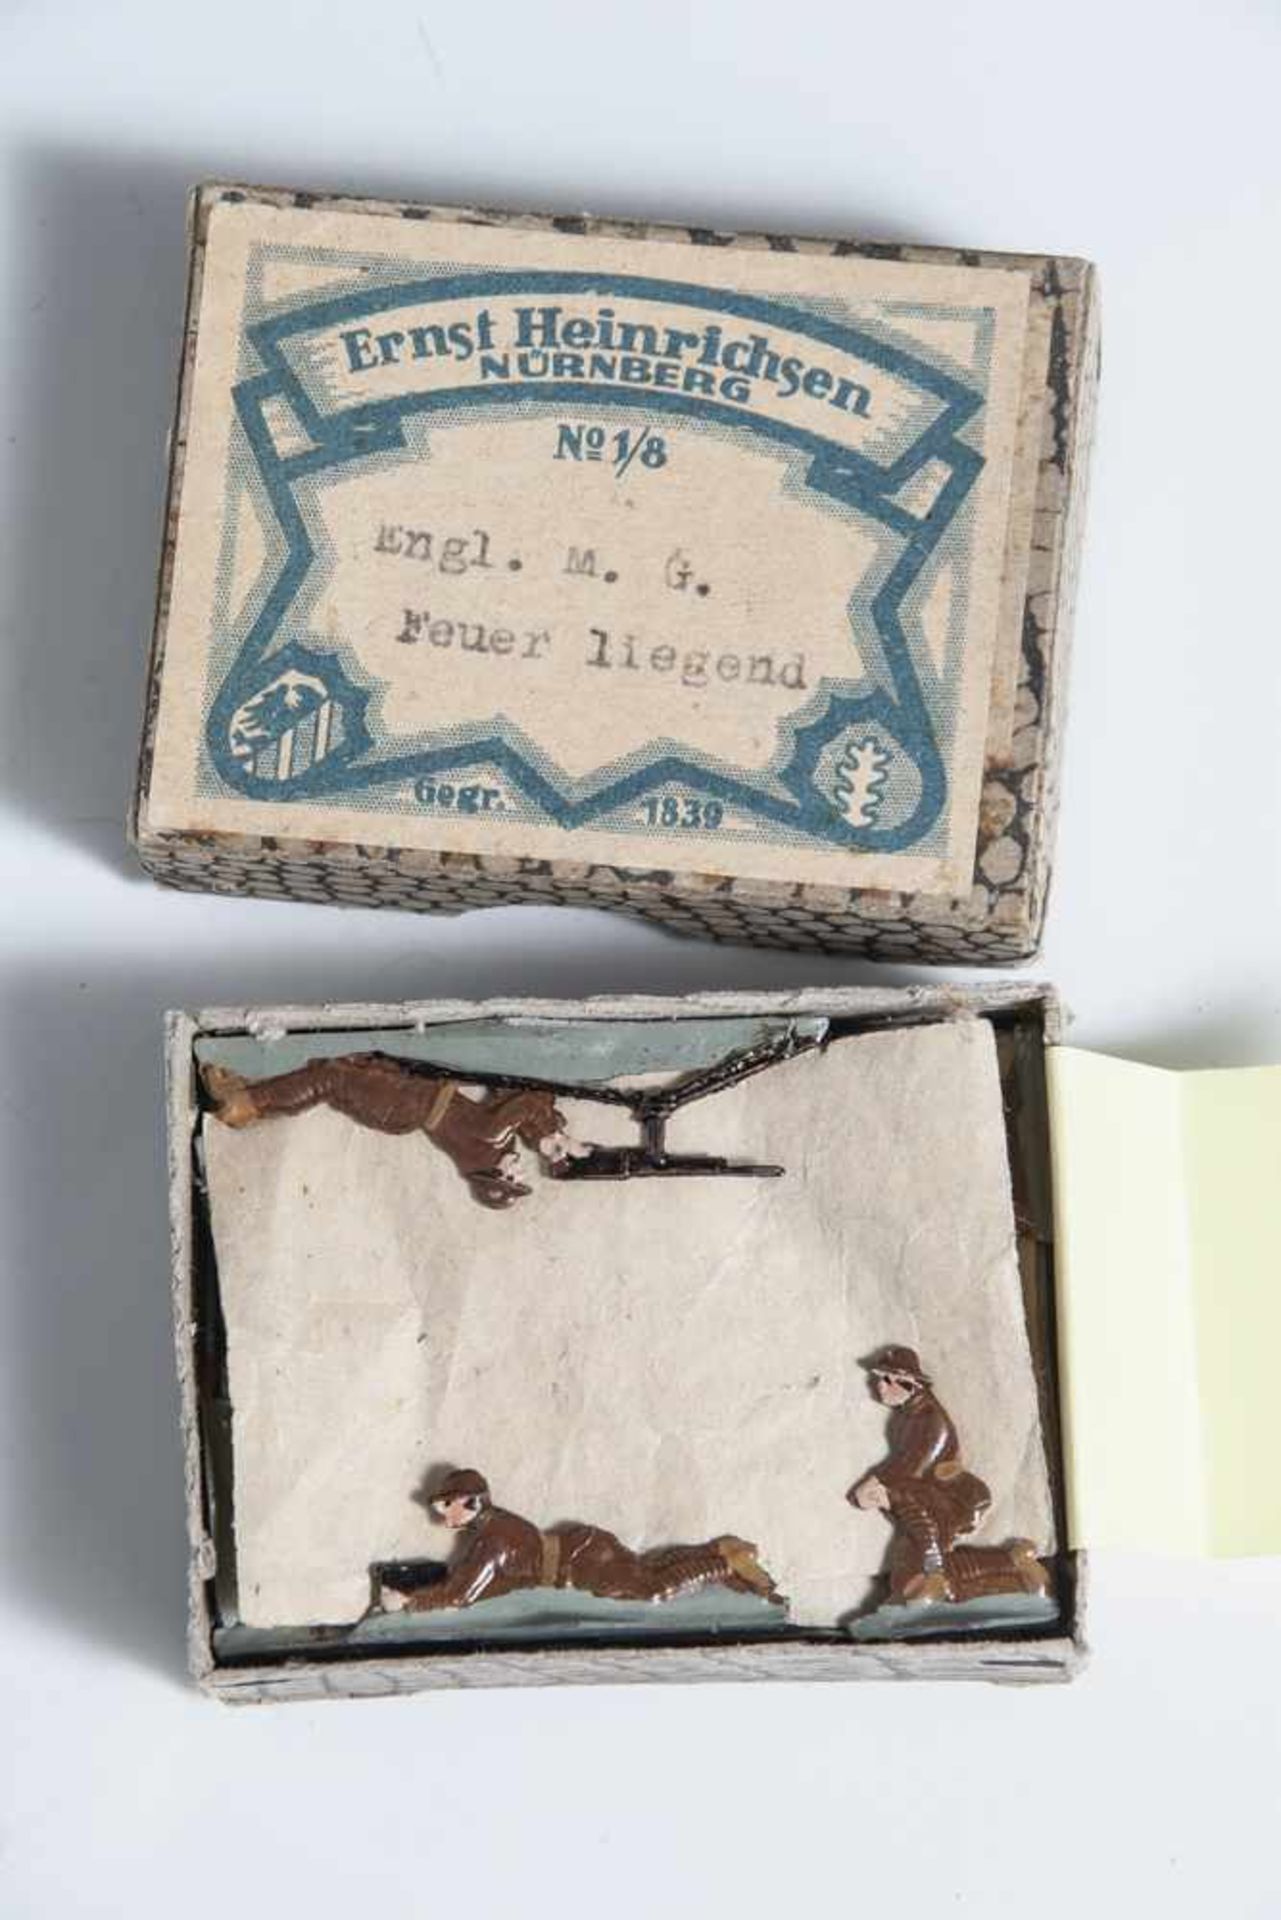 1 Schachtel Zinnfiguren, "Engl. M.G. Feuer liegend", Ernst Heinrichsen, Nürnberg, No. 1/8. In org.